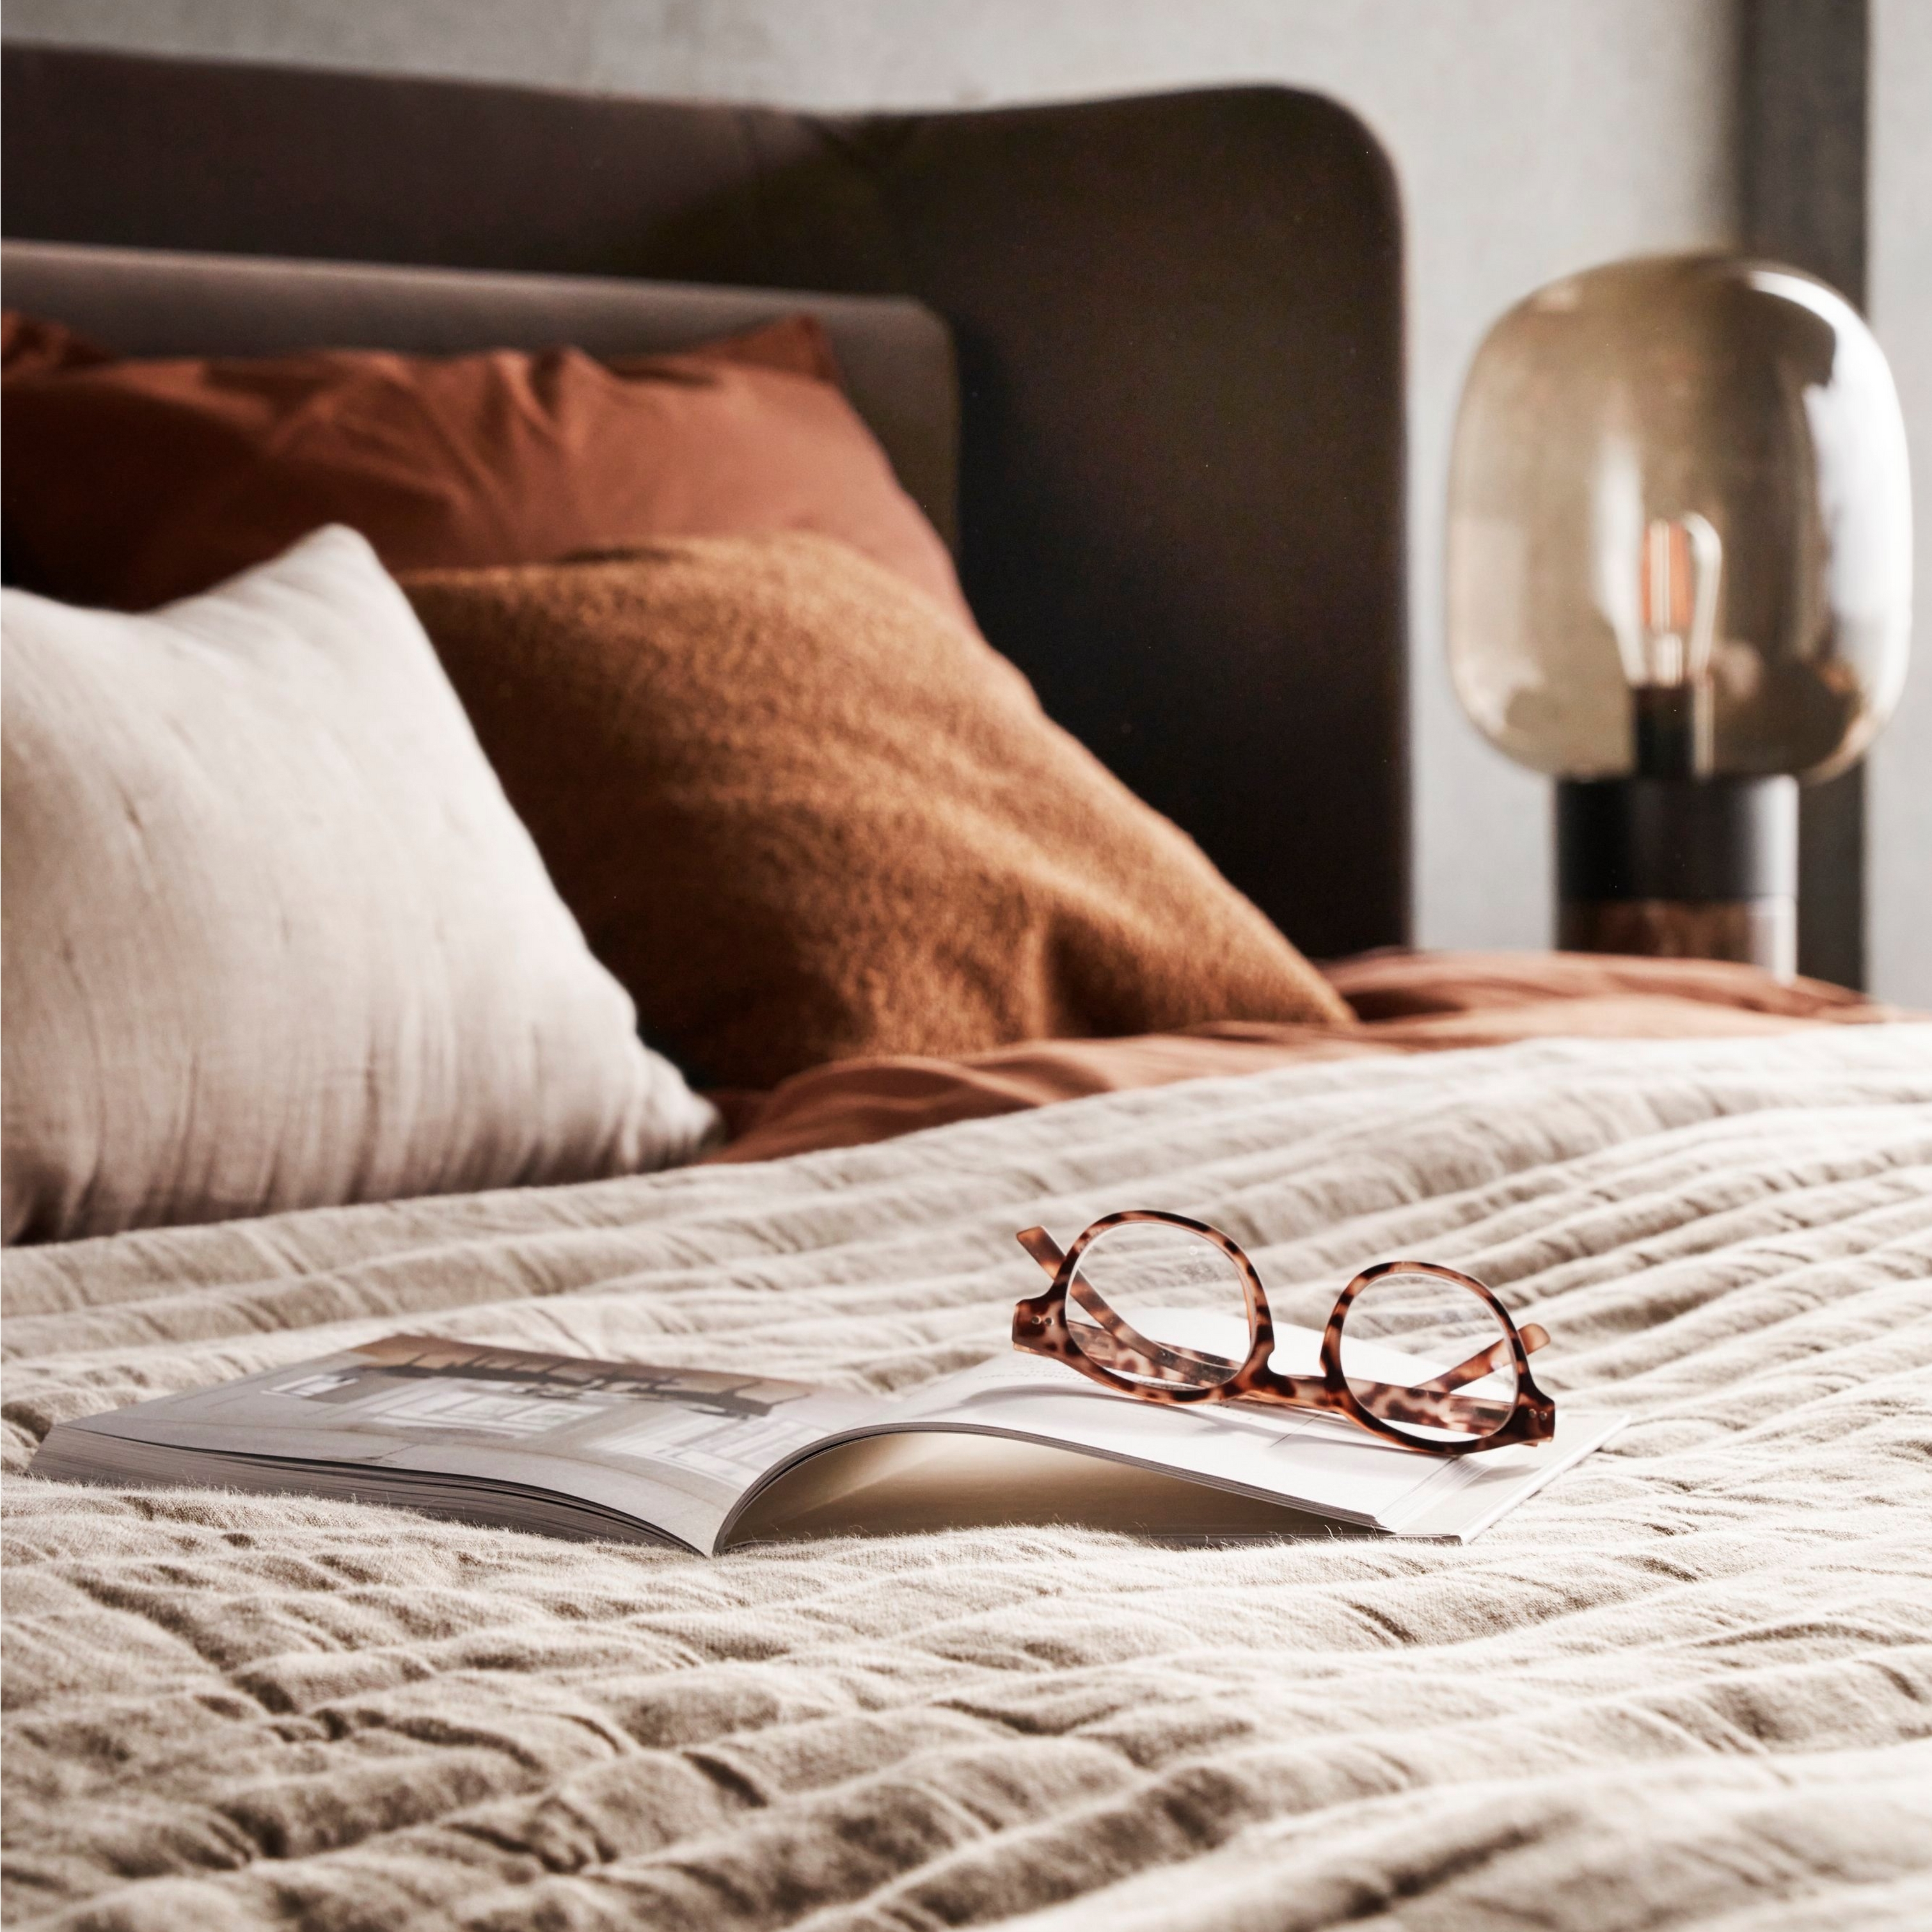 Кровать с текстурированным постельным бельем, очками на открытой книге и мягким прикроватным освещением.